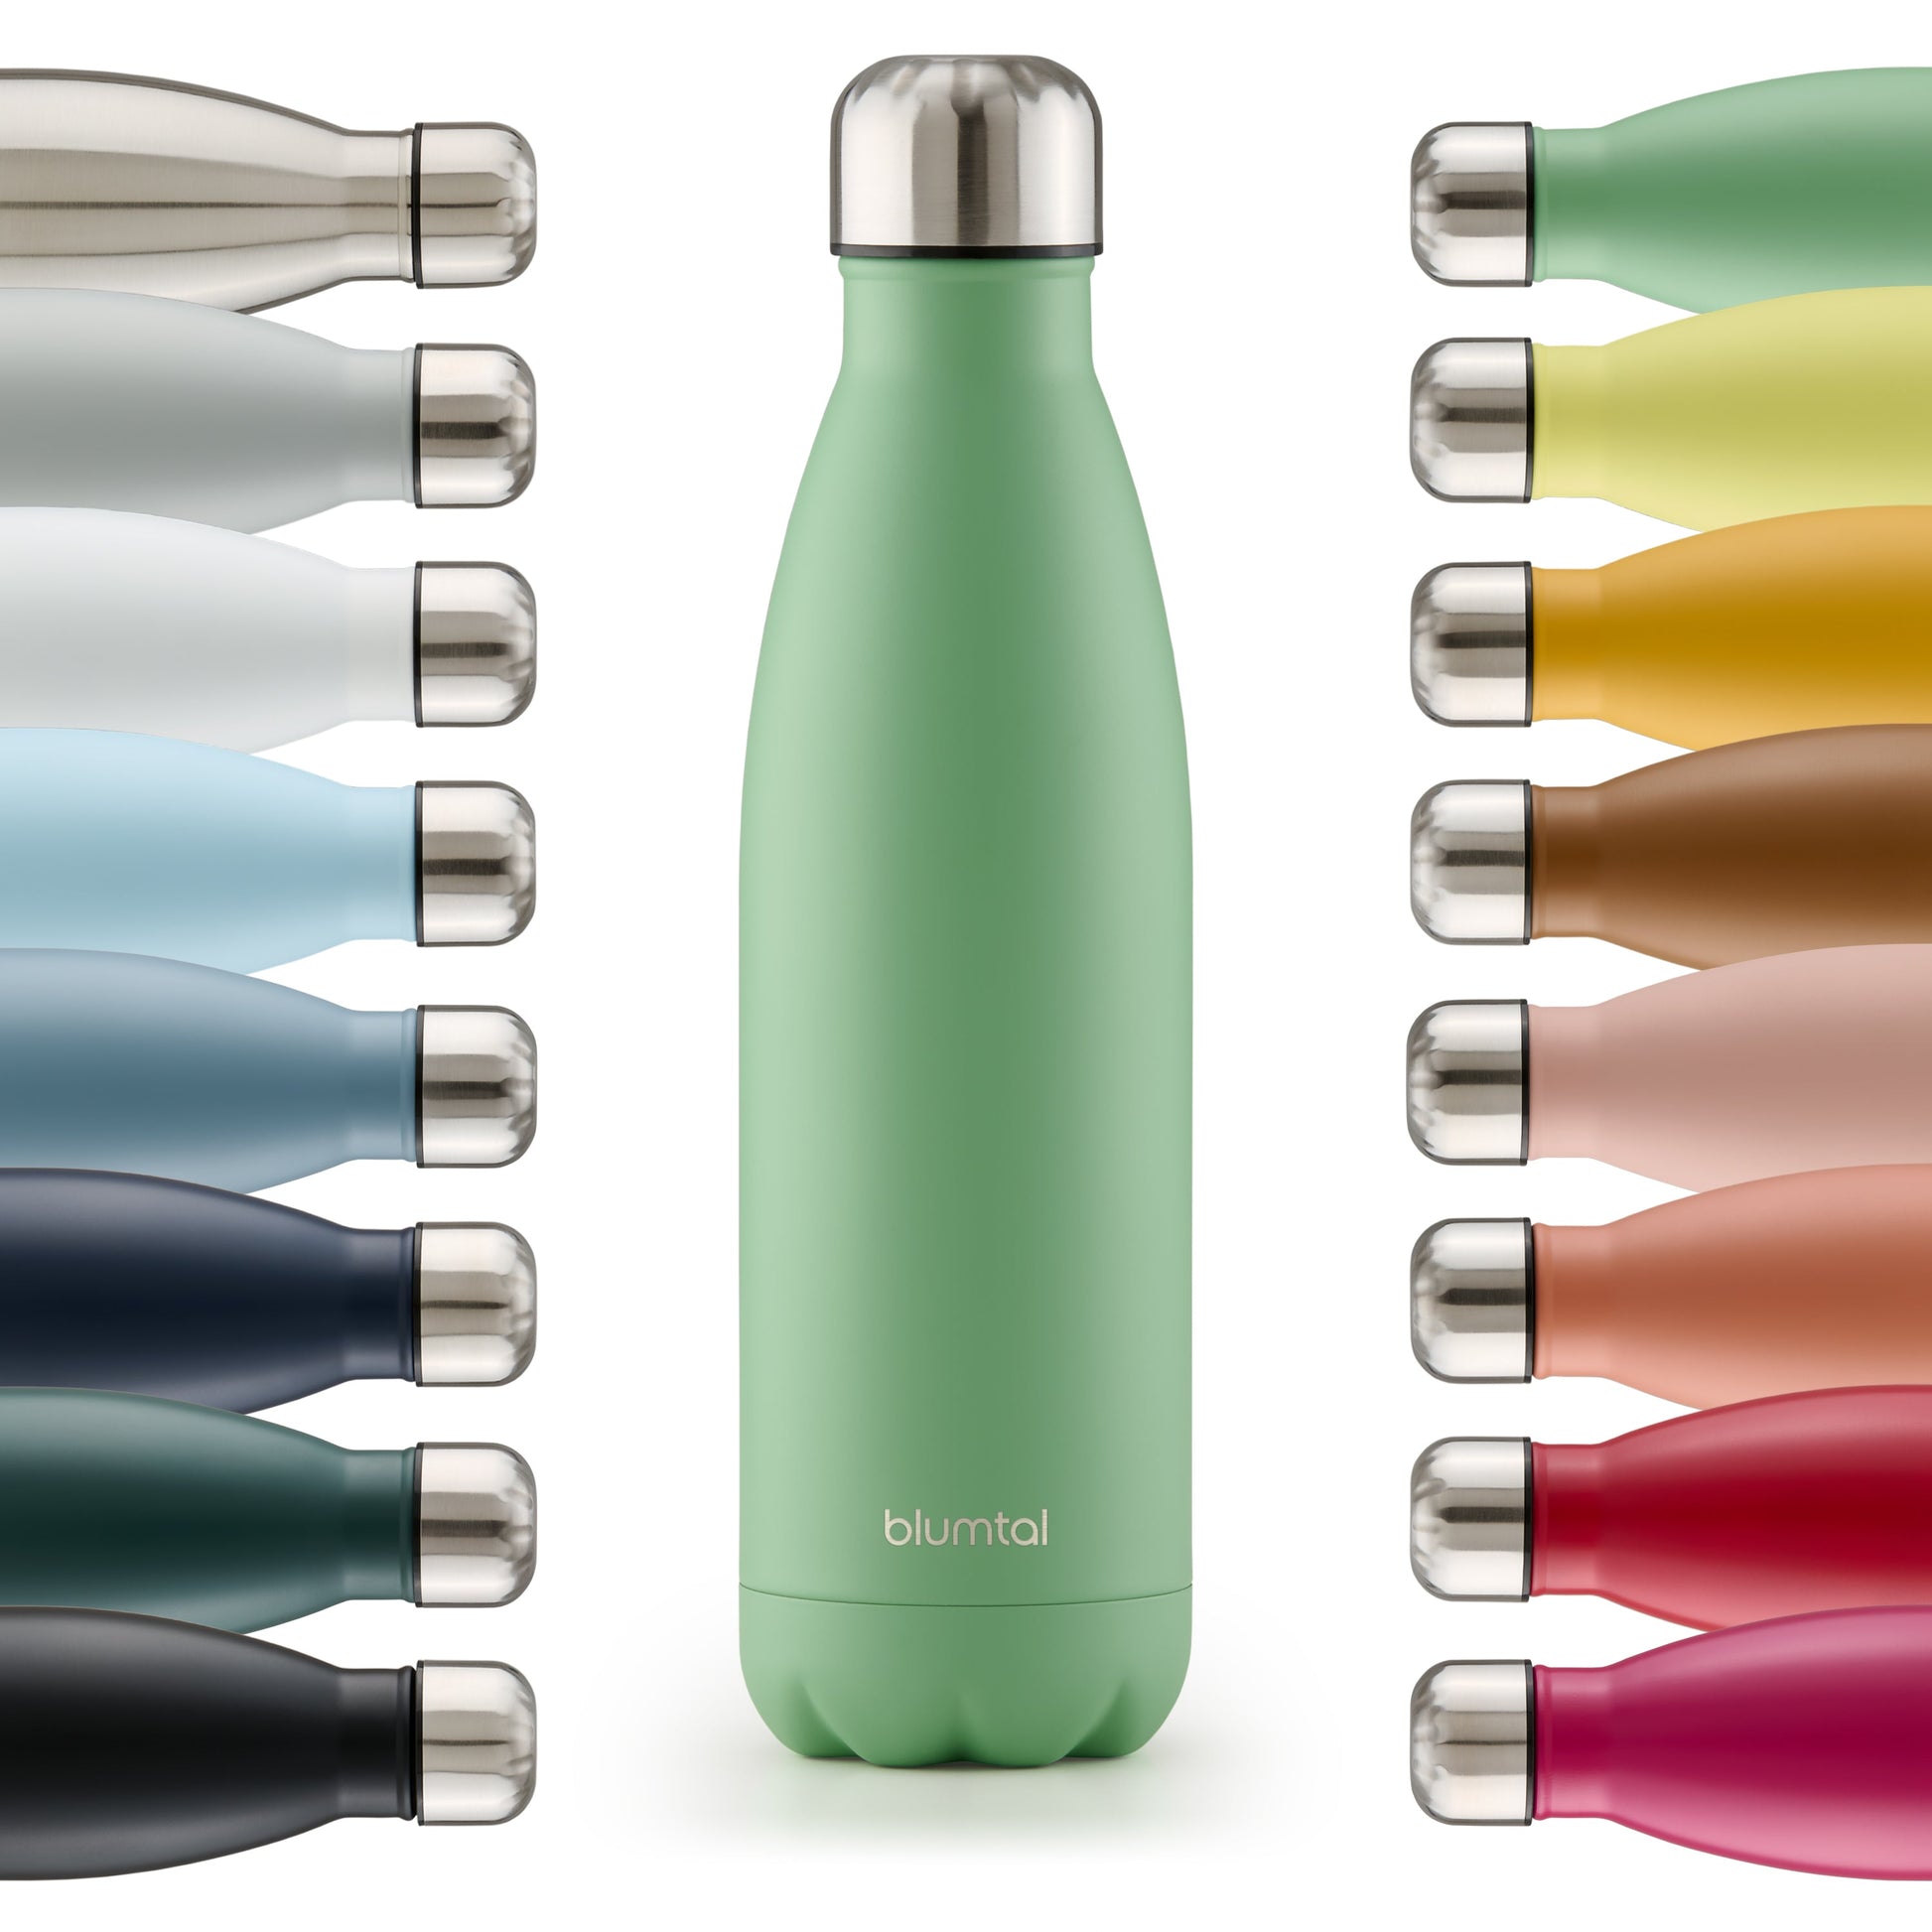 Farbige Auswahl an isolierten Edelstahl-Trinkflaschen von blumtal in einer Reihe angeordnet mit Fokus auf eine vorderseitige summer grün farbene Flasche.